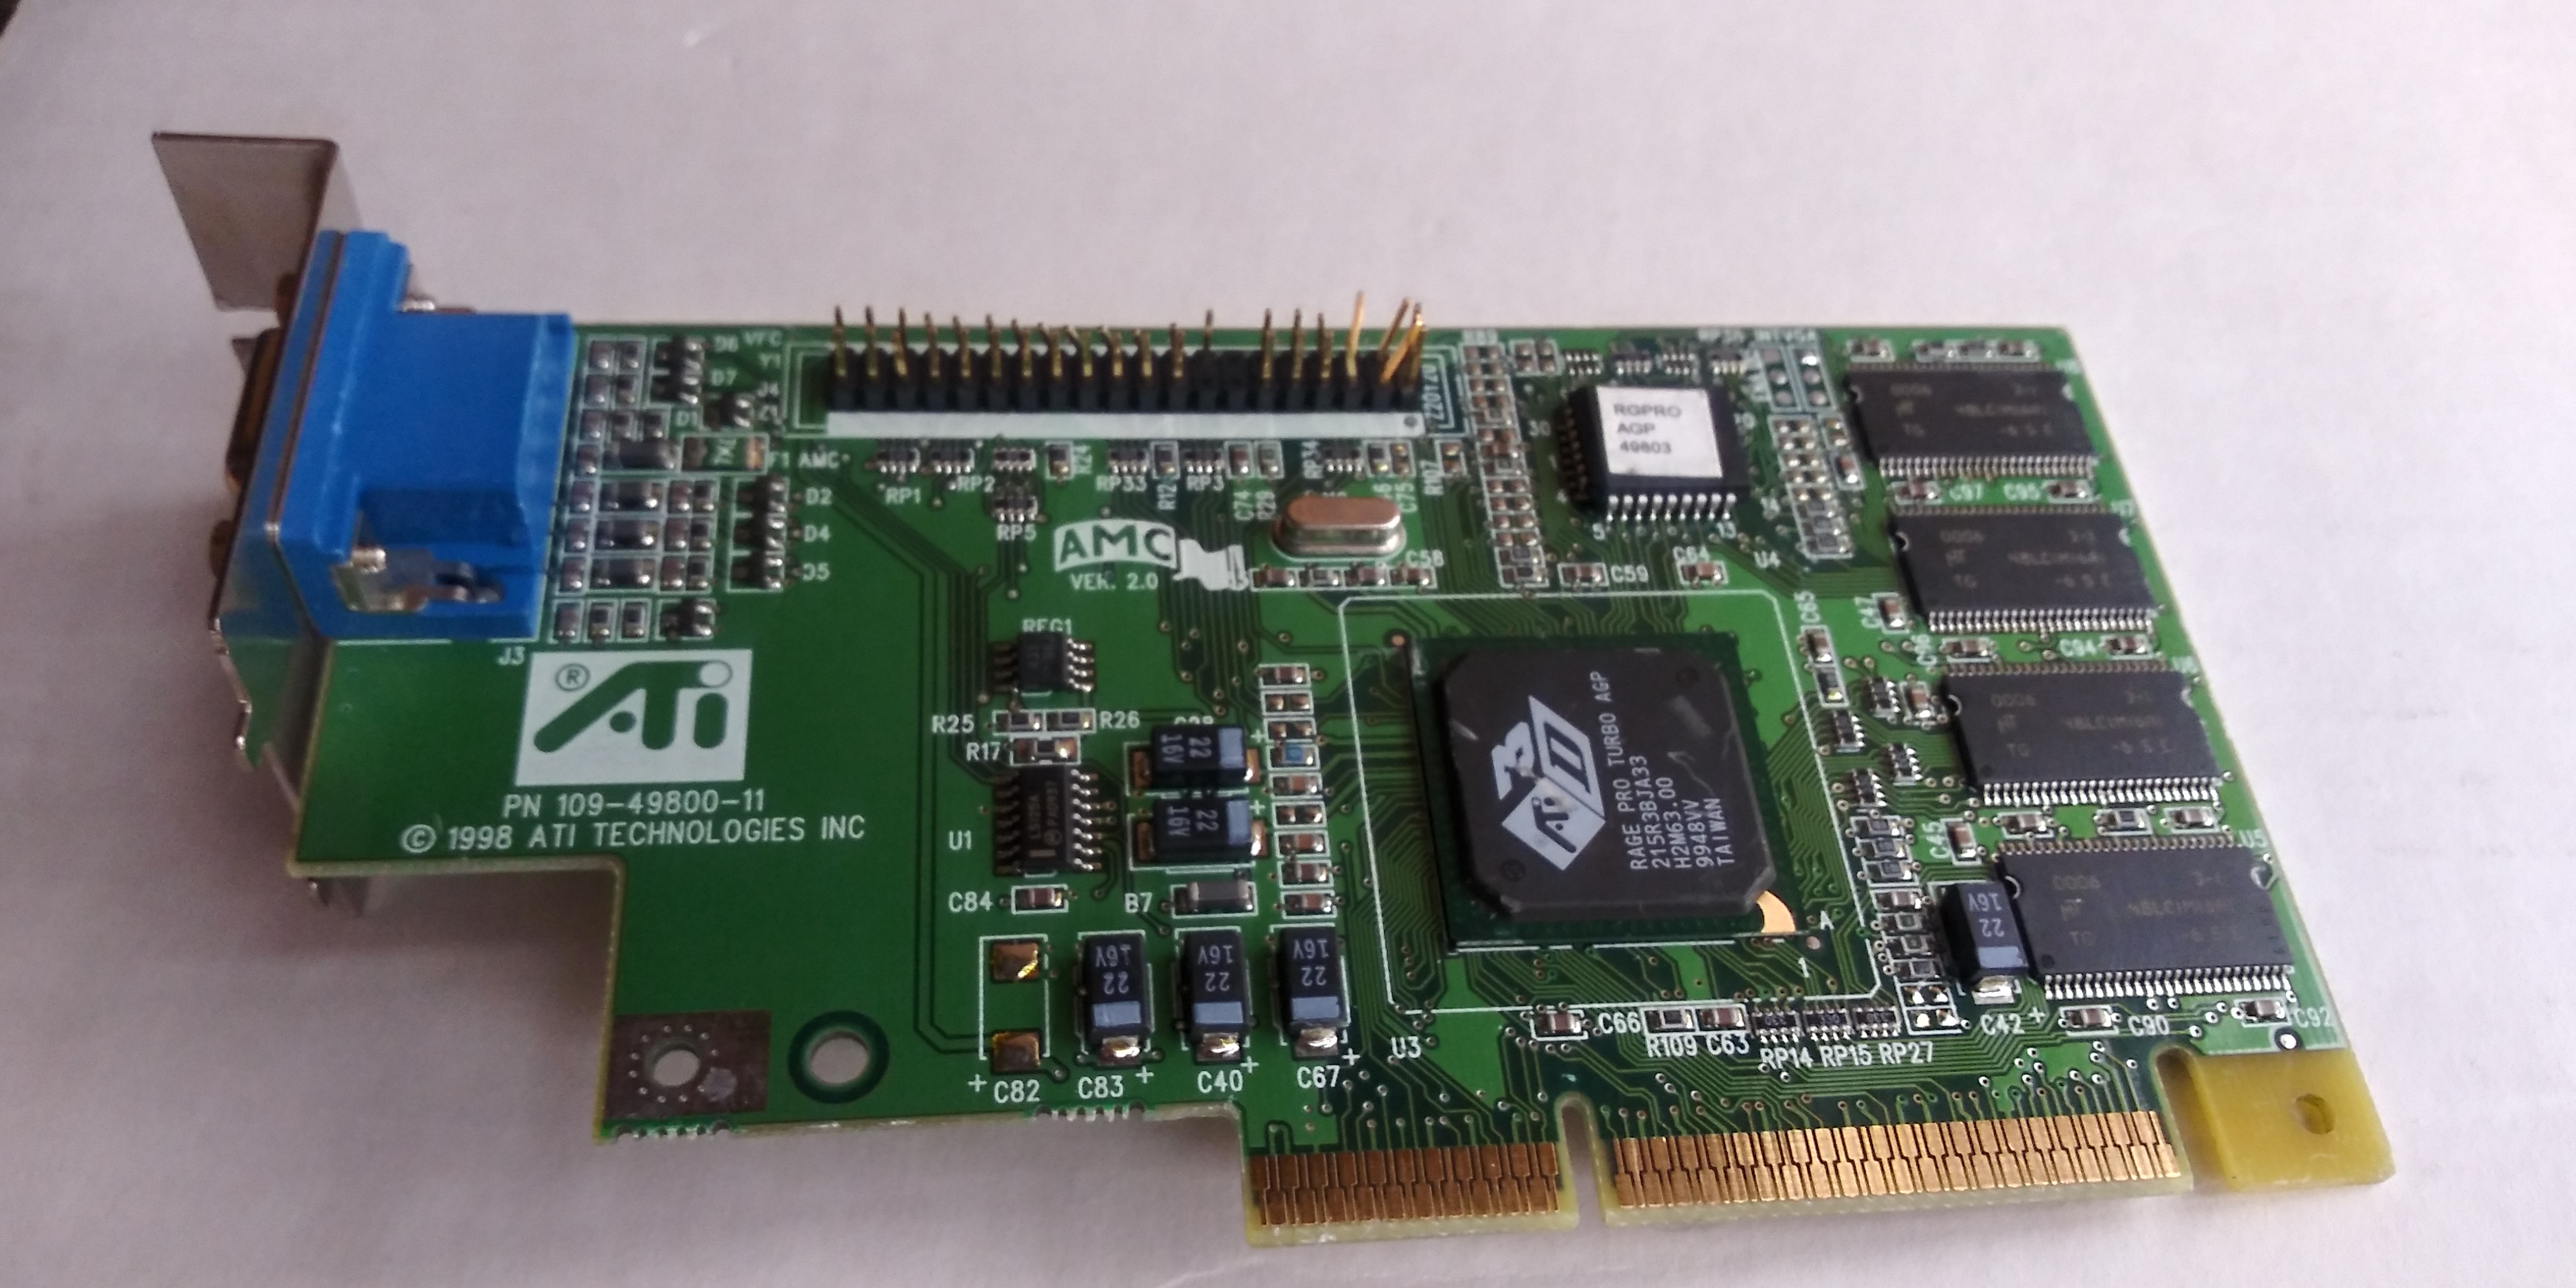 ATI_109-49800-11, ATI 3D Rage Pro Turbo 8MB AGP video card